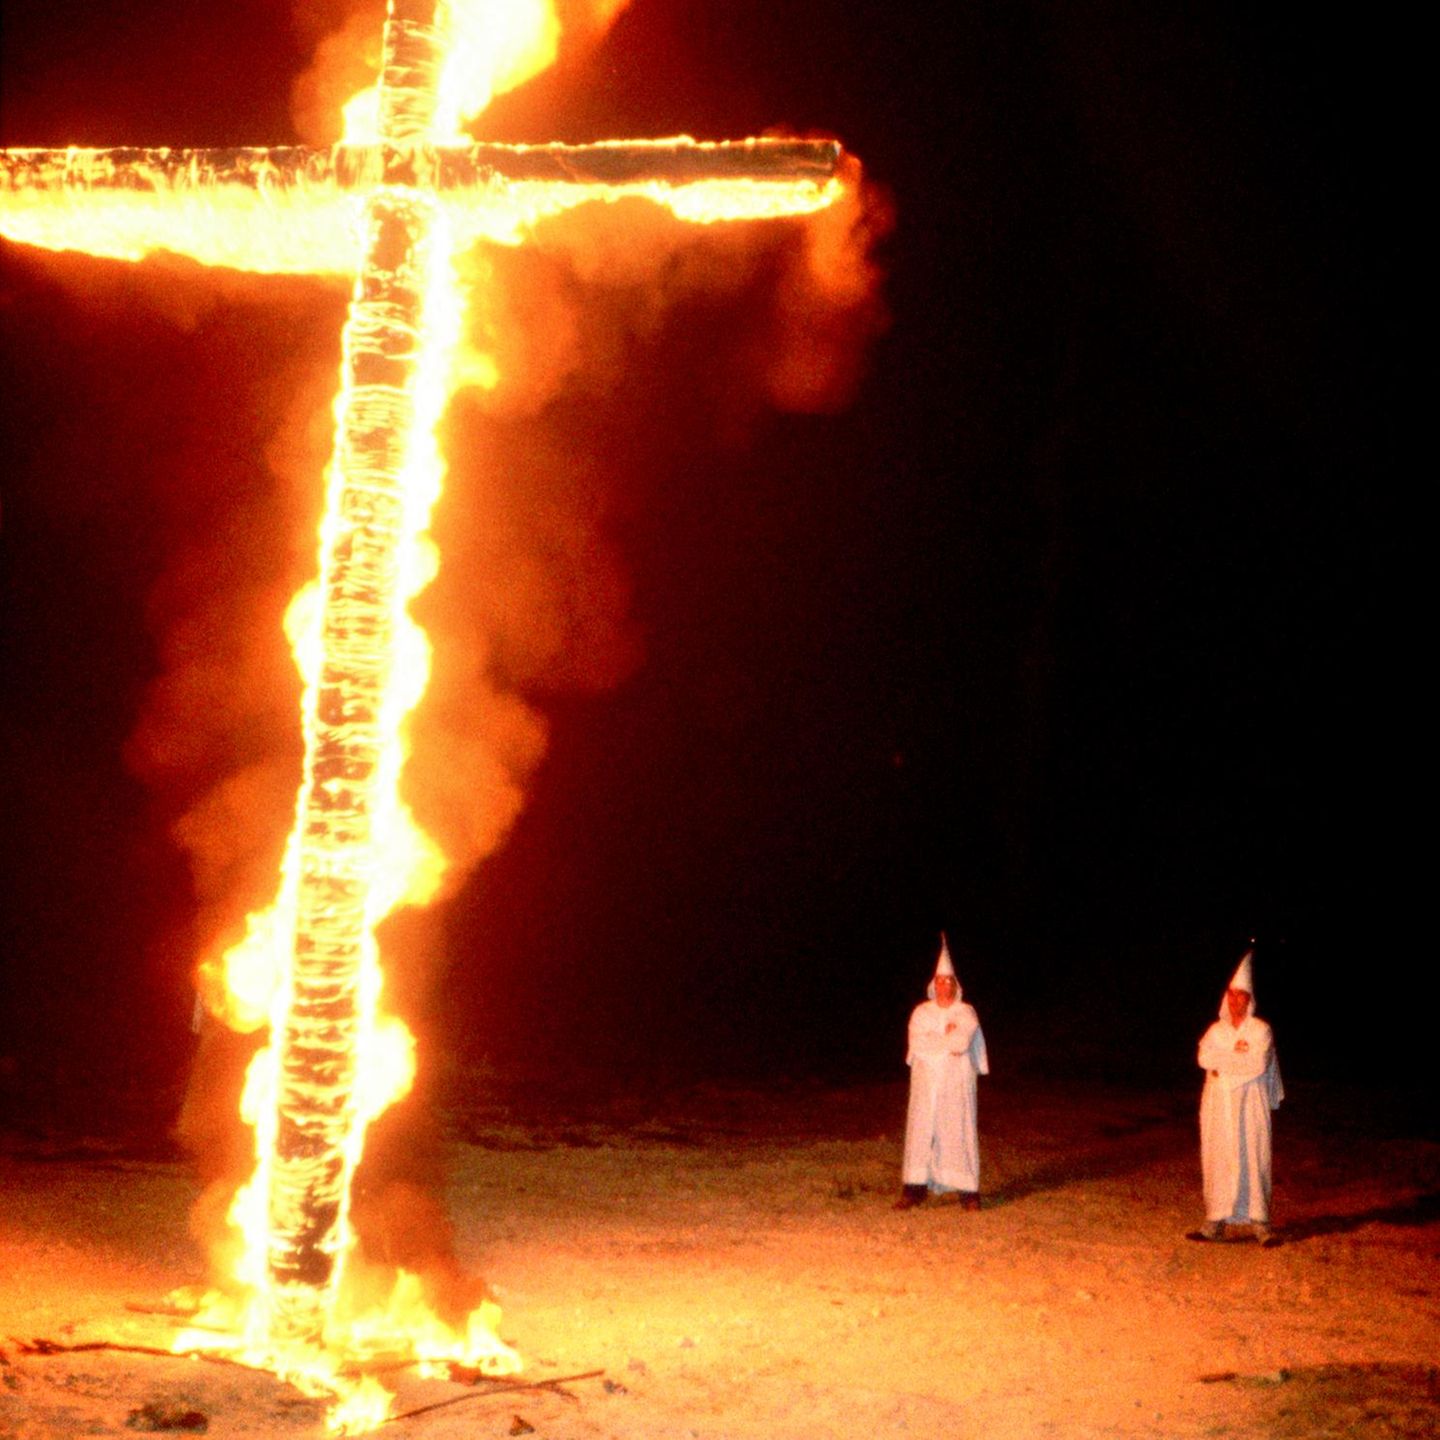 Gadsden, Alabama, 1978: Seit Anfang des 20. Jahrhunderts zelebriert der Ku-Klux-Klan sein Ritual des Hasses. Die brennenden Kreuze sind als Fanal und Drohung meilenweit zu sehen. Für Jacob Holdt jedoch waren auch die Klansmänner Leidtragende der Geschichte, ähnlich wie ihre schwarzen Opfer